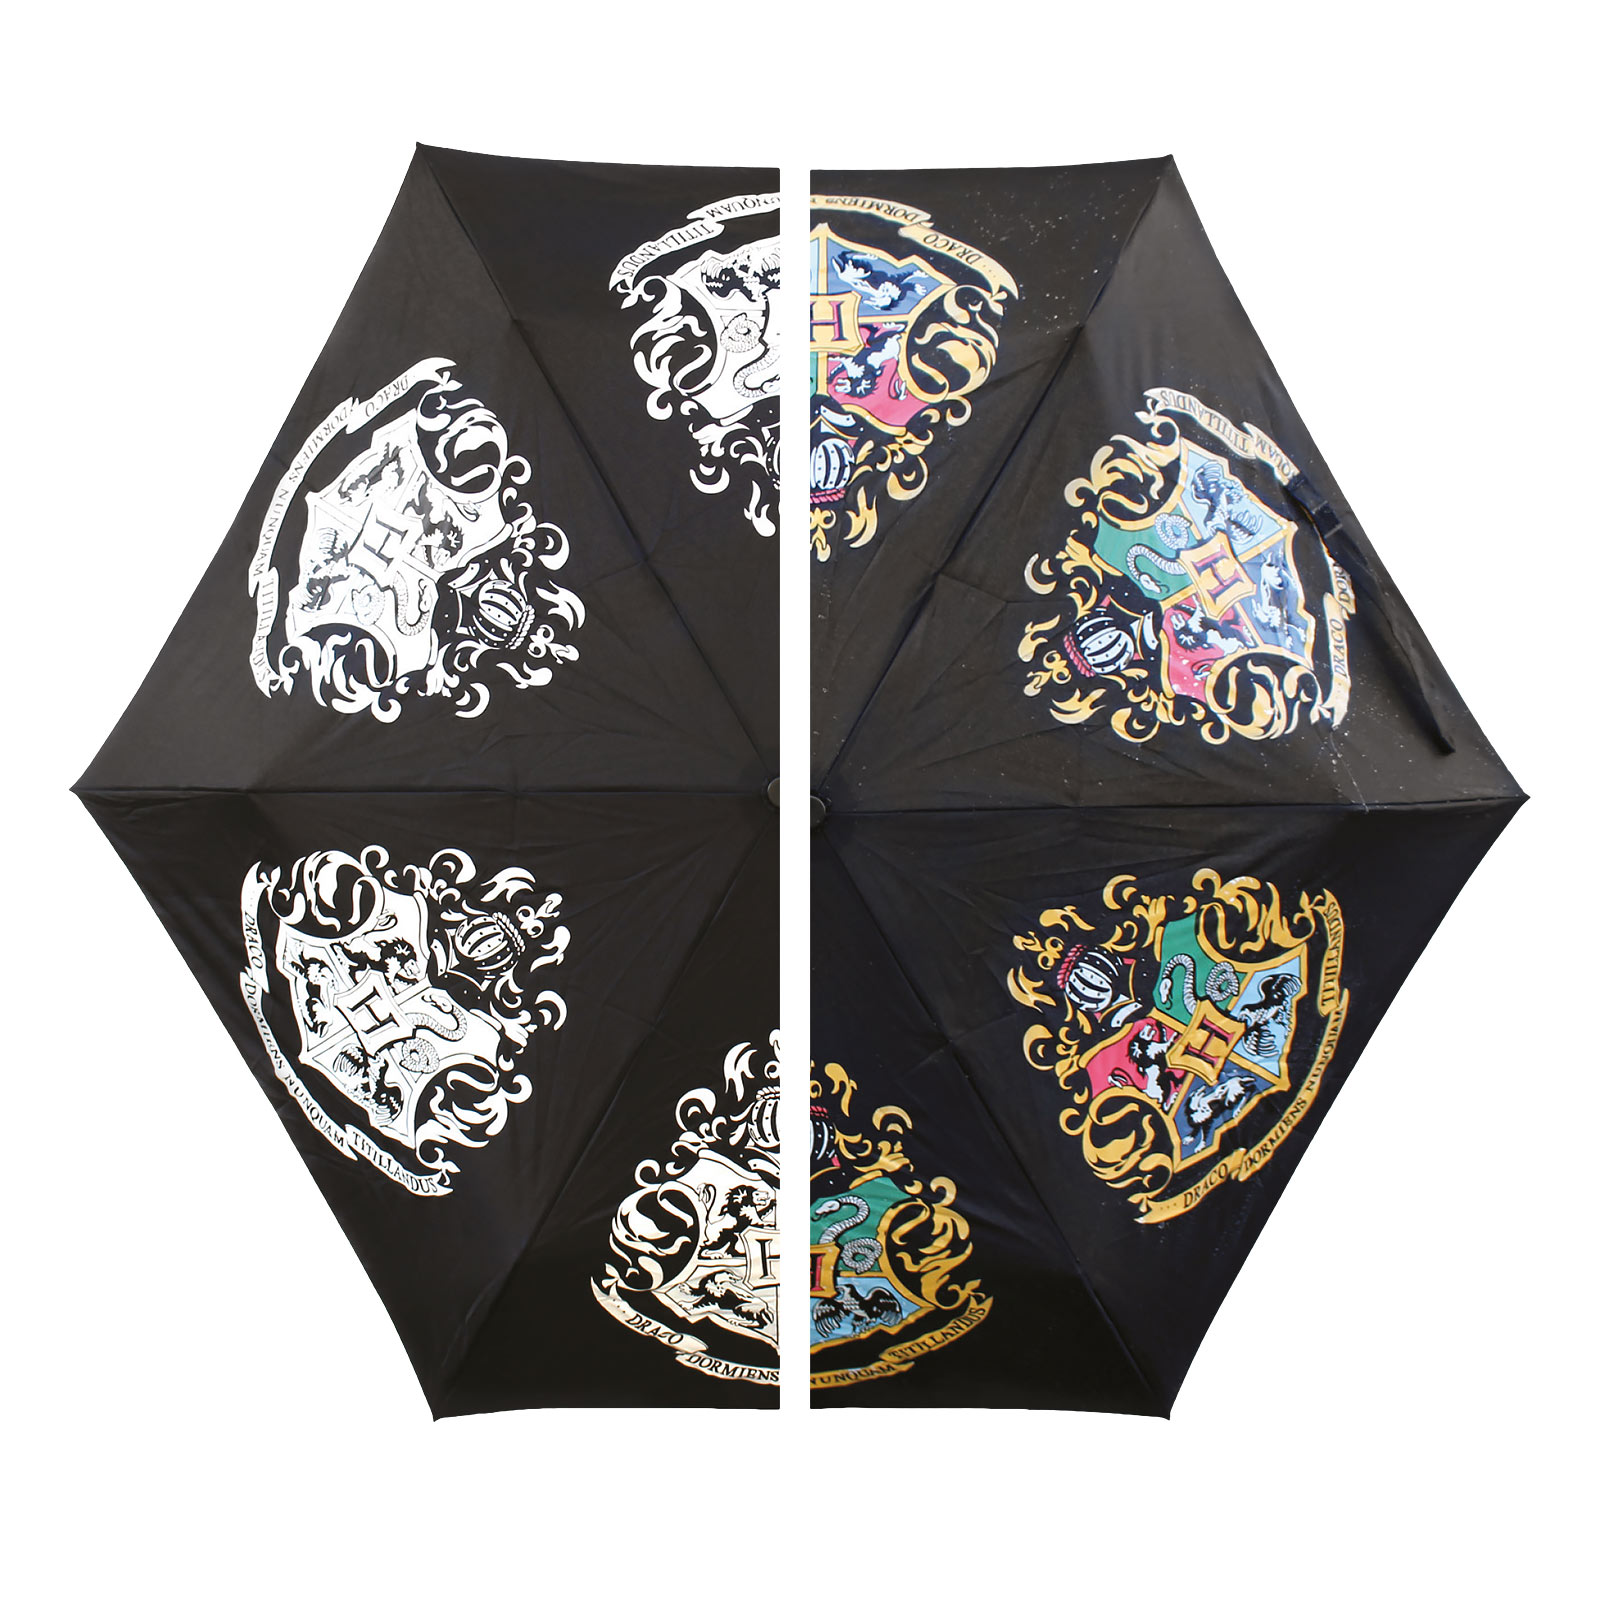 Harry Potter - Hogwarts Crest Umbrella with Aqua Effect